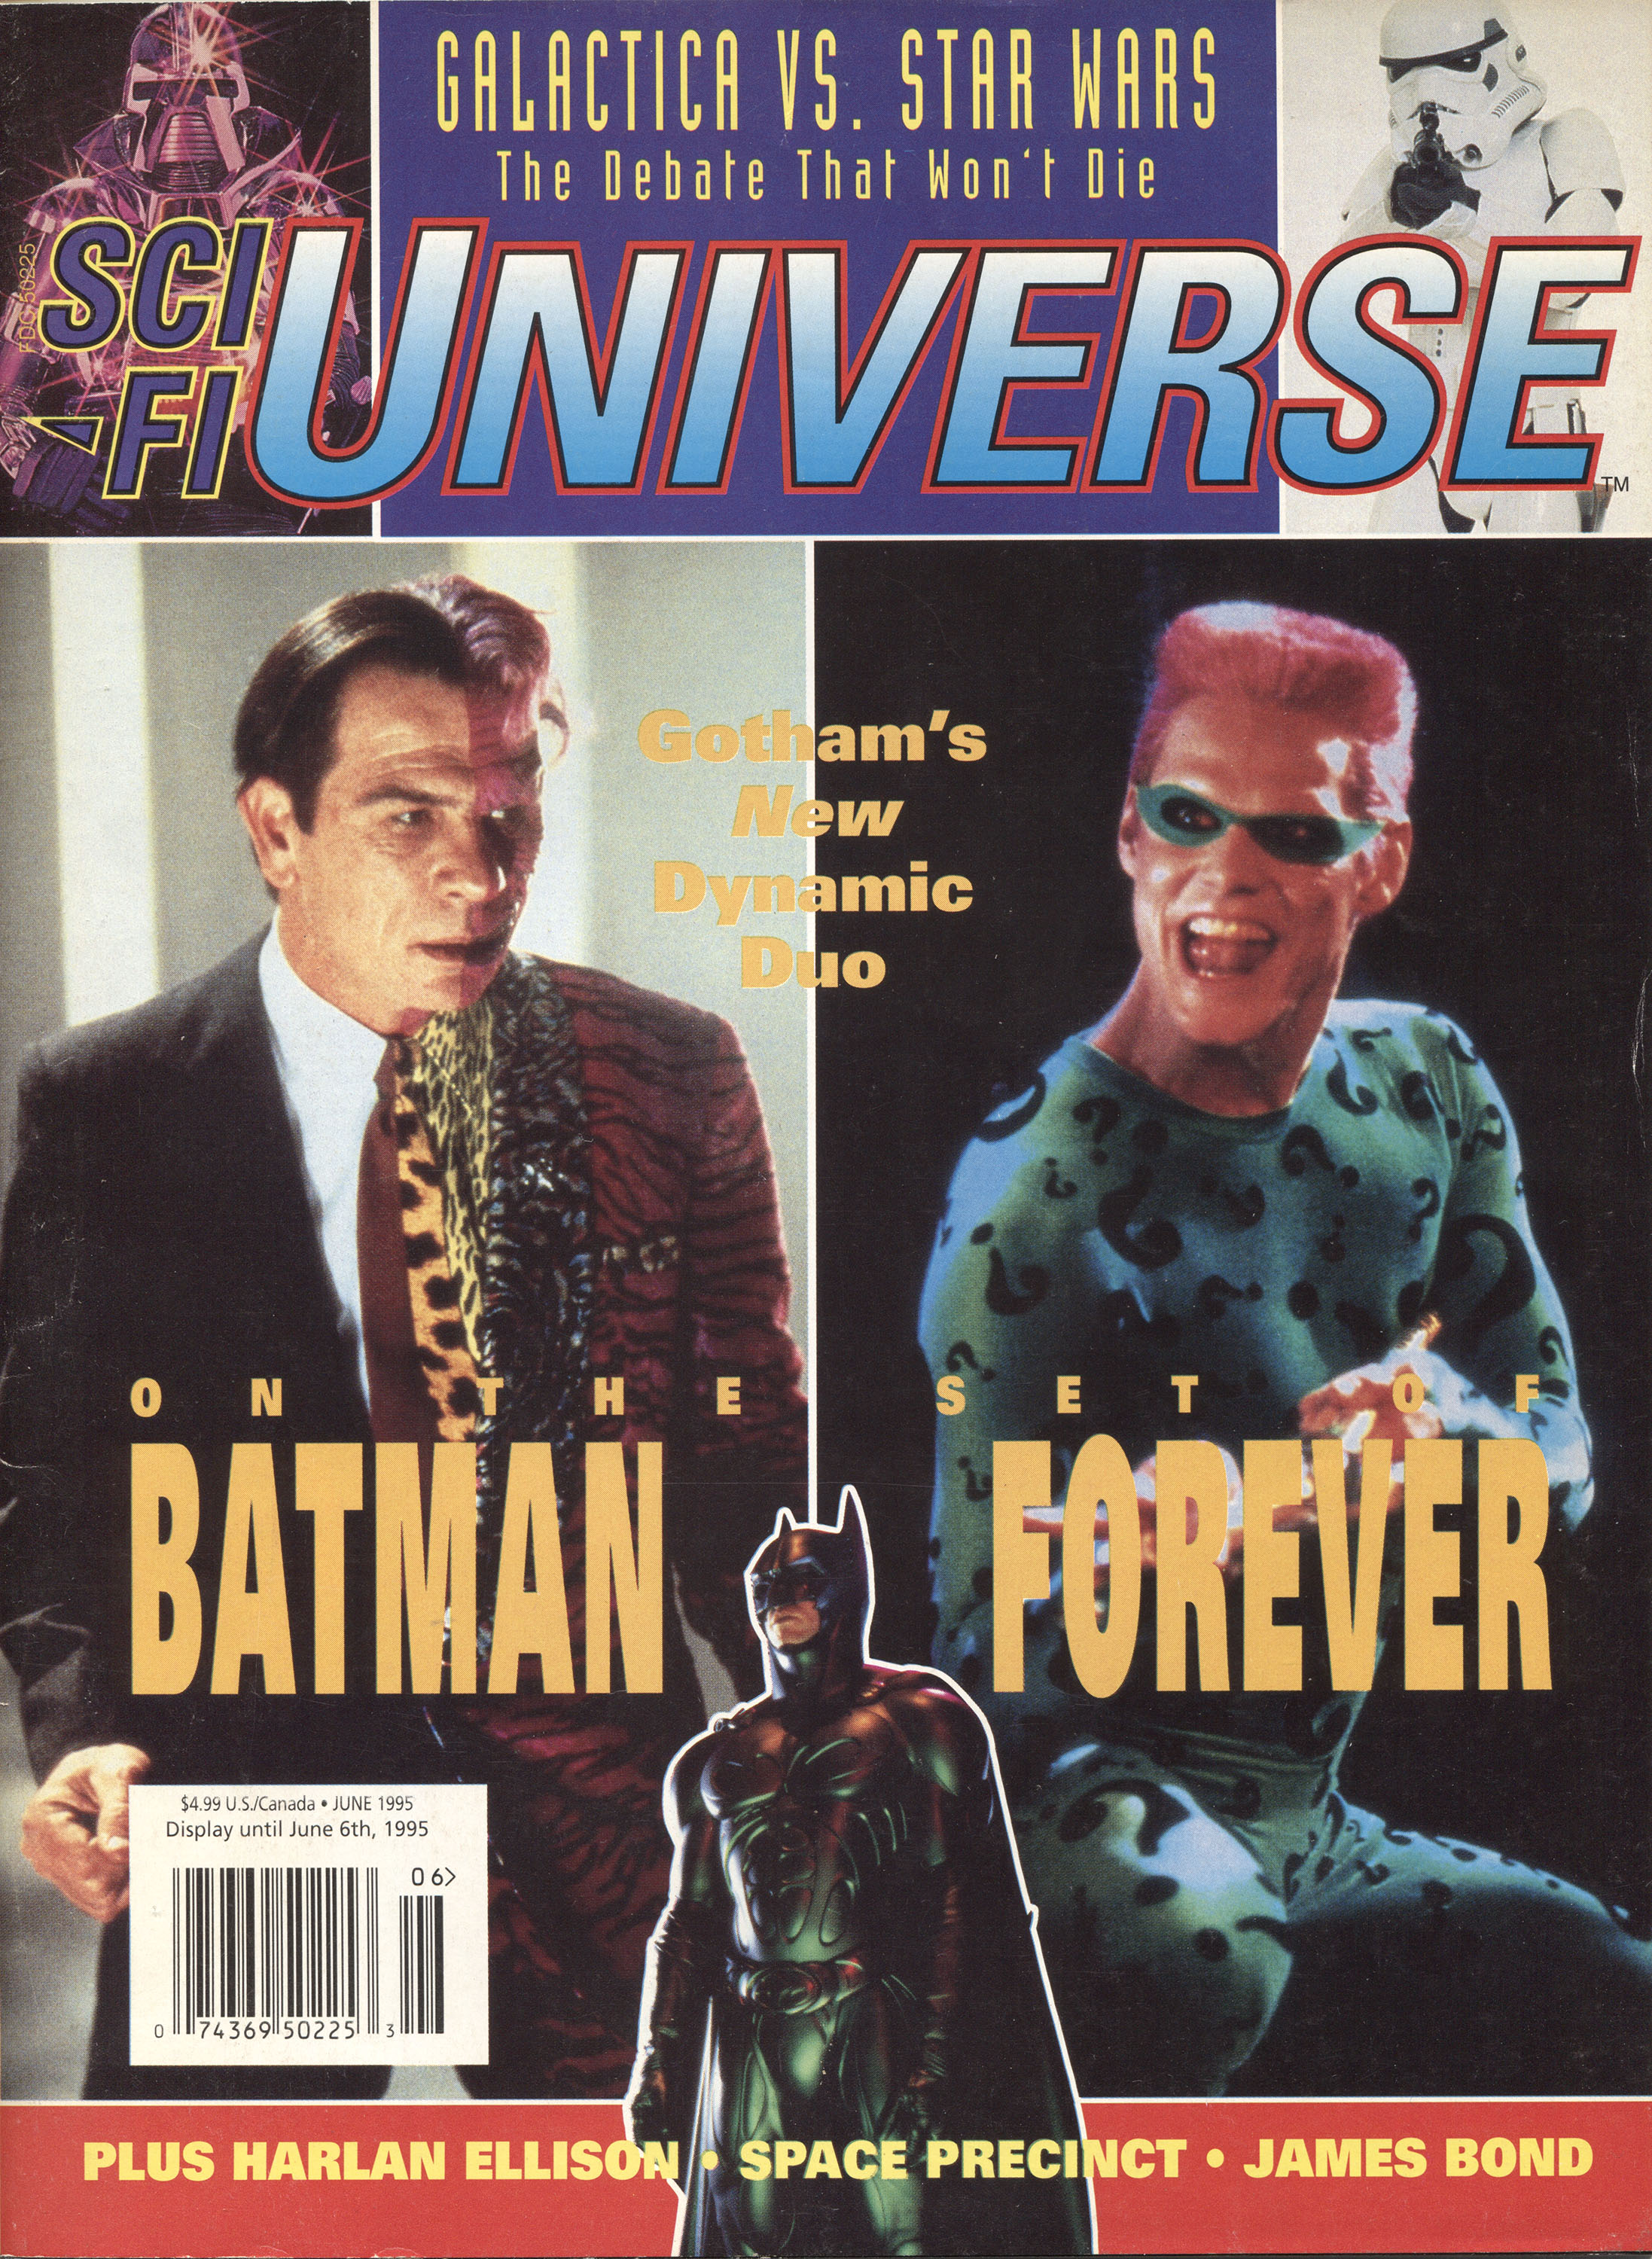 Sci-Fi Universe #7, cover